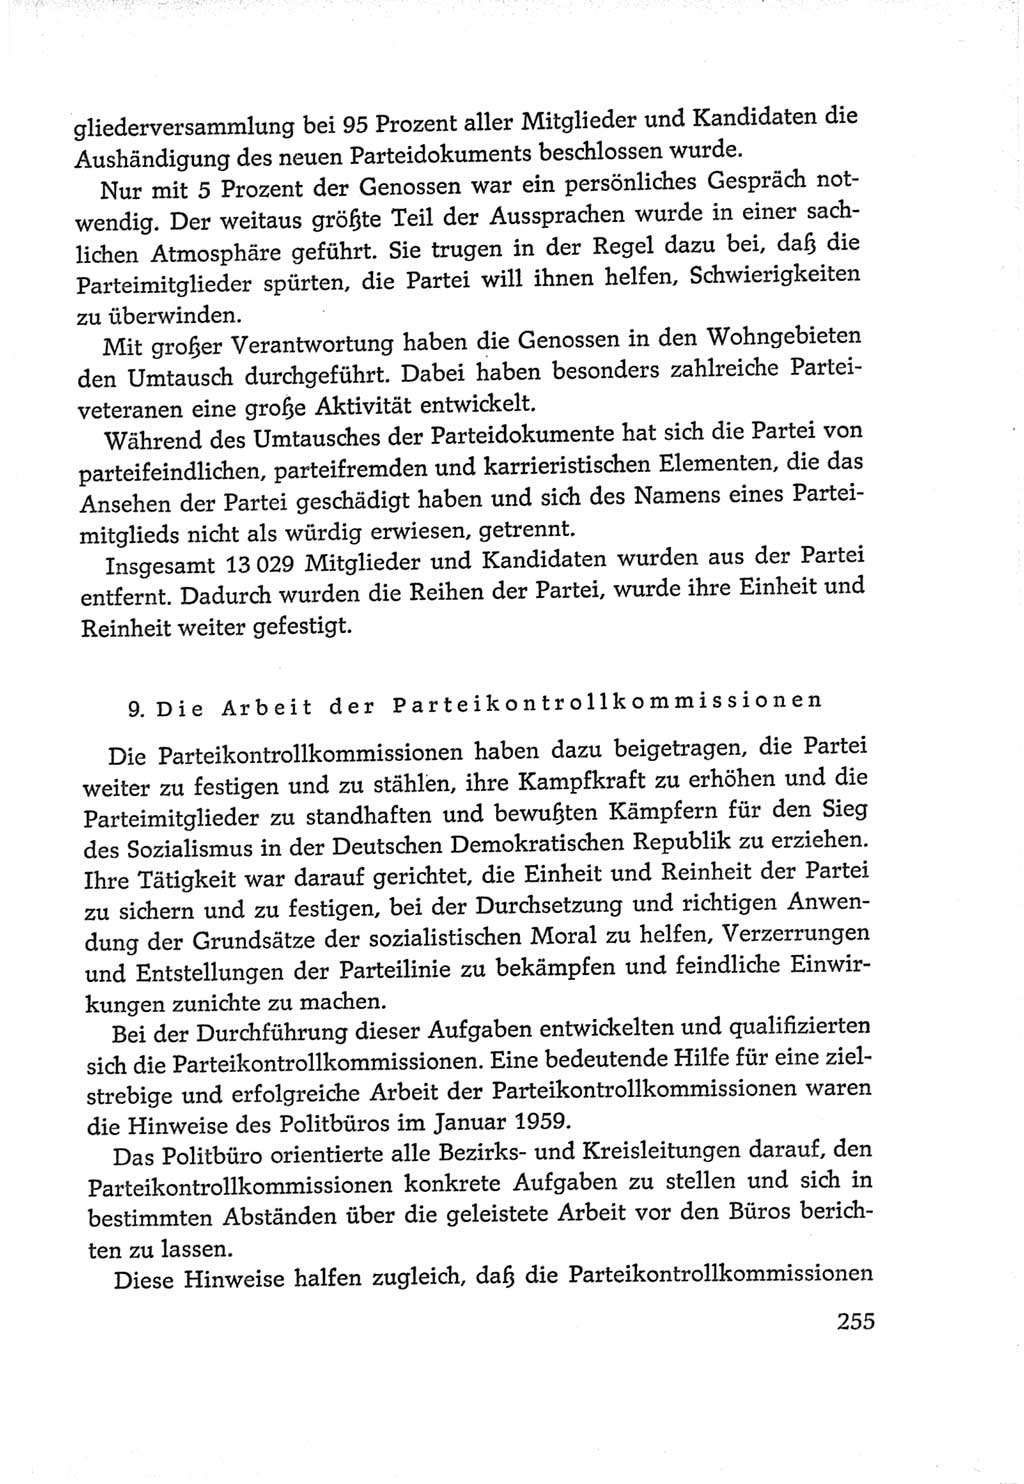 Protokoll der Verhandlungen des Ⅵ. Parteitages der Sozialistischen Einheitspartei Deutschlands (SED) [Deutsche Demokratische Republik (DDR)] 1963, Band Ⅳ, Seite 255 (Prot. Verh. Ⅵ. PT SED DDR 1963, Bd. Ⅳ, S. 255)